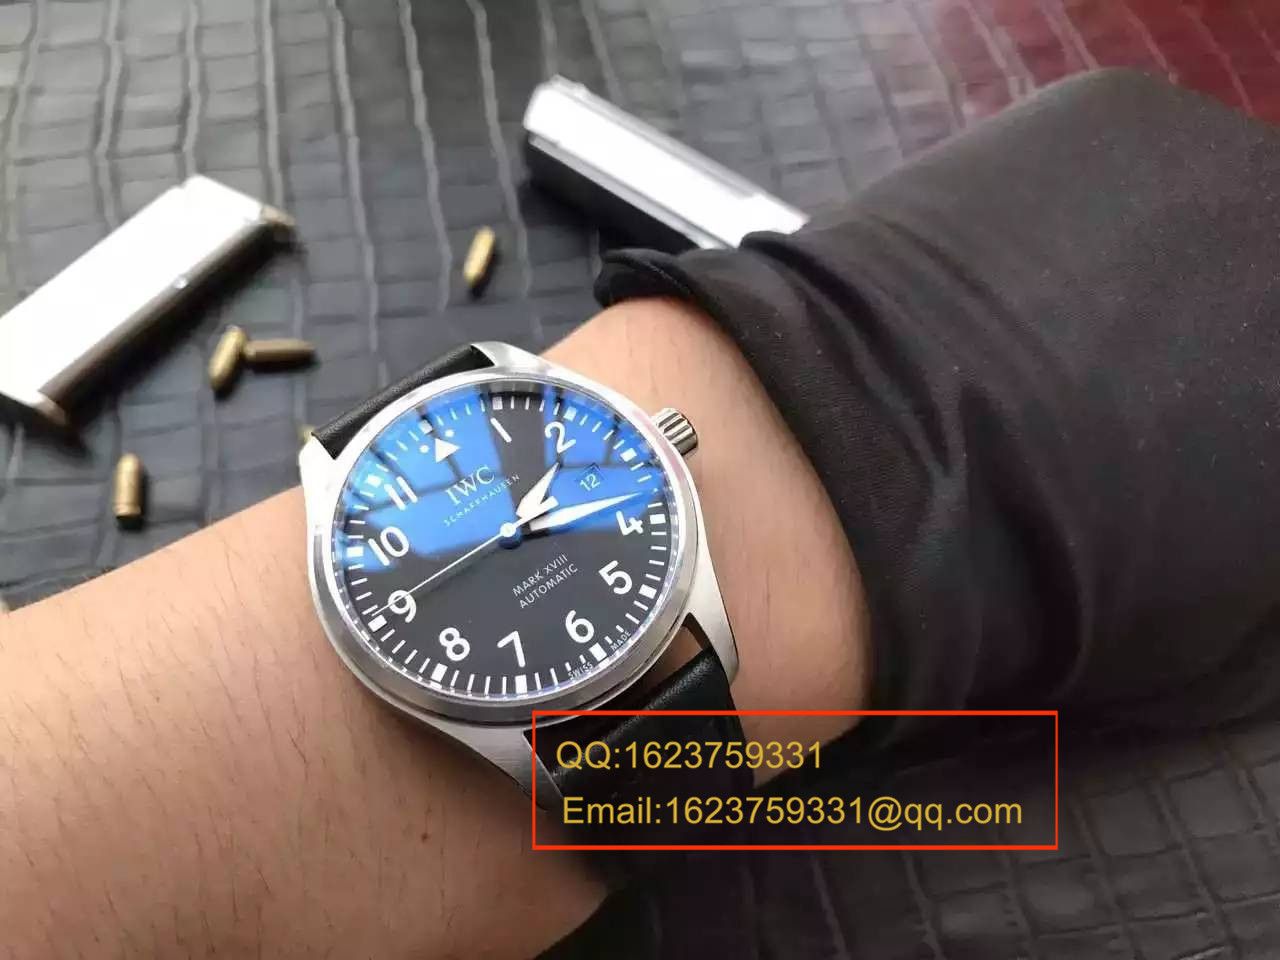 【独家视频测评MK厂超A精仿手表】万国飞行员马克十八飞行员腕表系列 IW327001腕表 